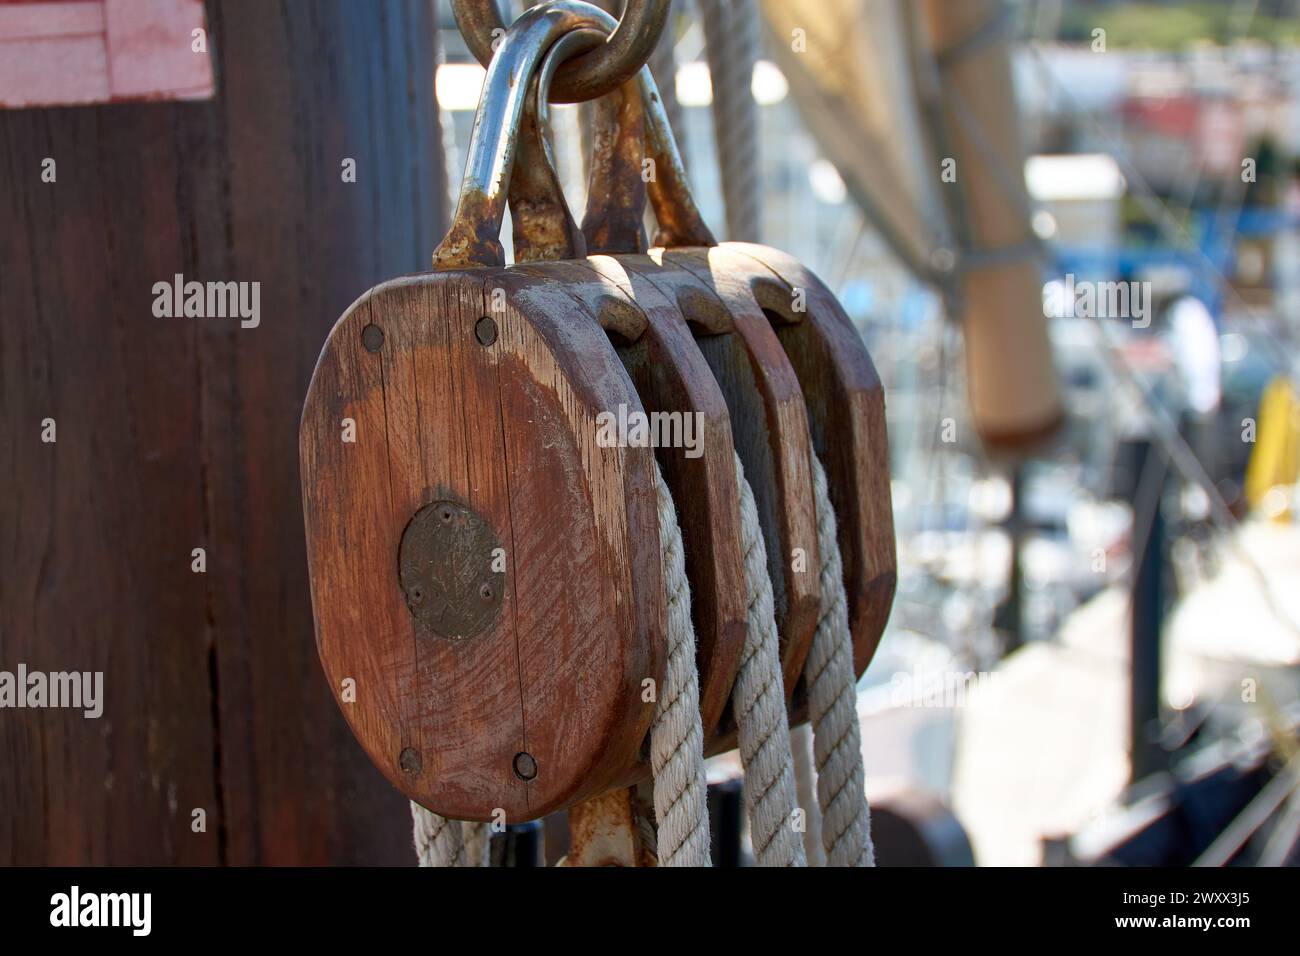 Poulie pour voiles et cordes en bois sur la réplique de la caravelle Santa Maria, avec la voile et d'autres navires dans le port, doux et hors de portée Banque D'Images